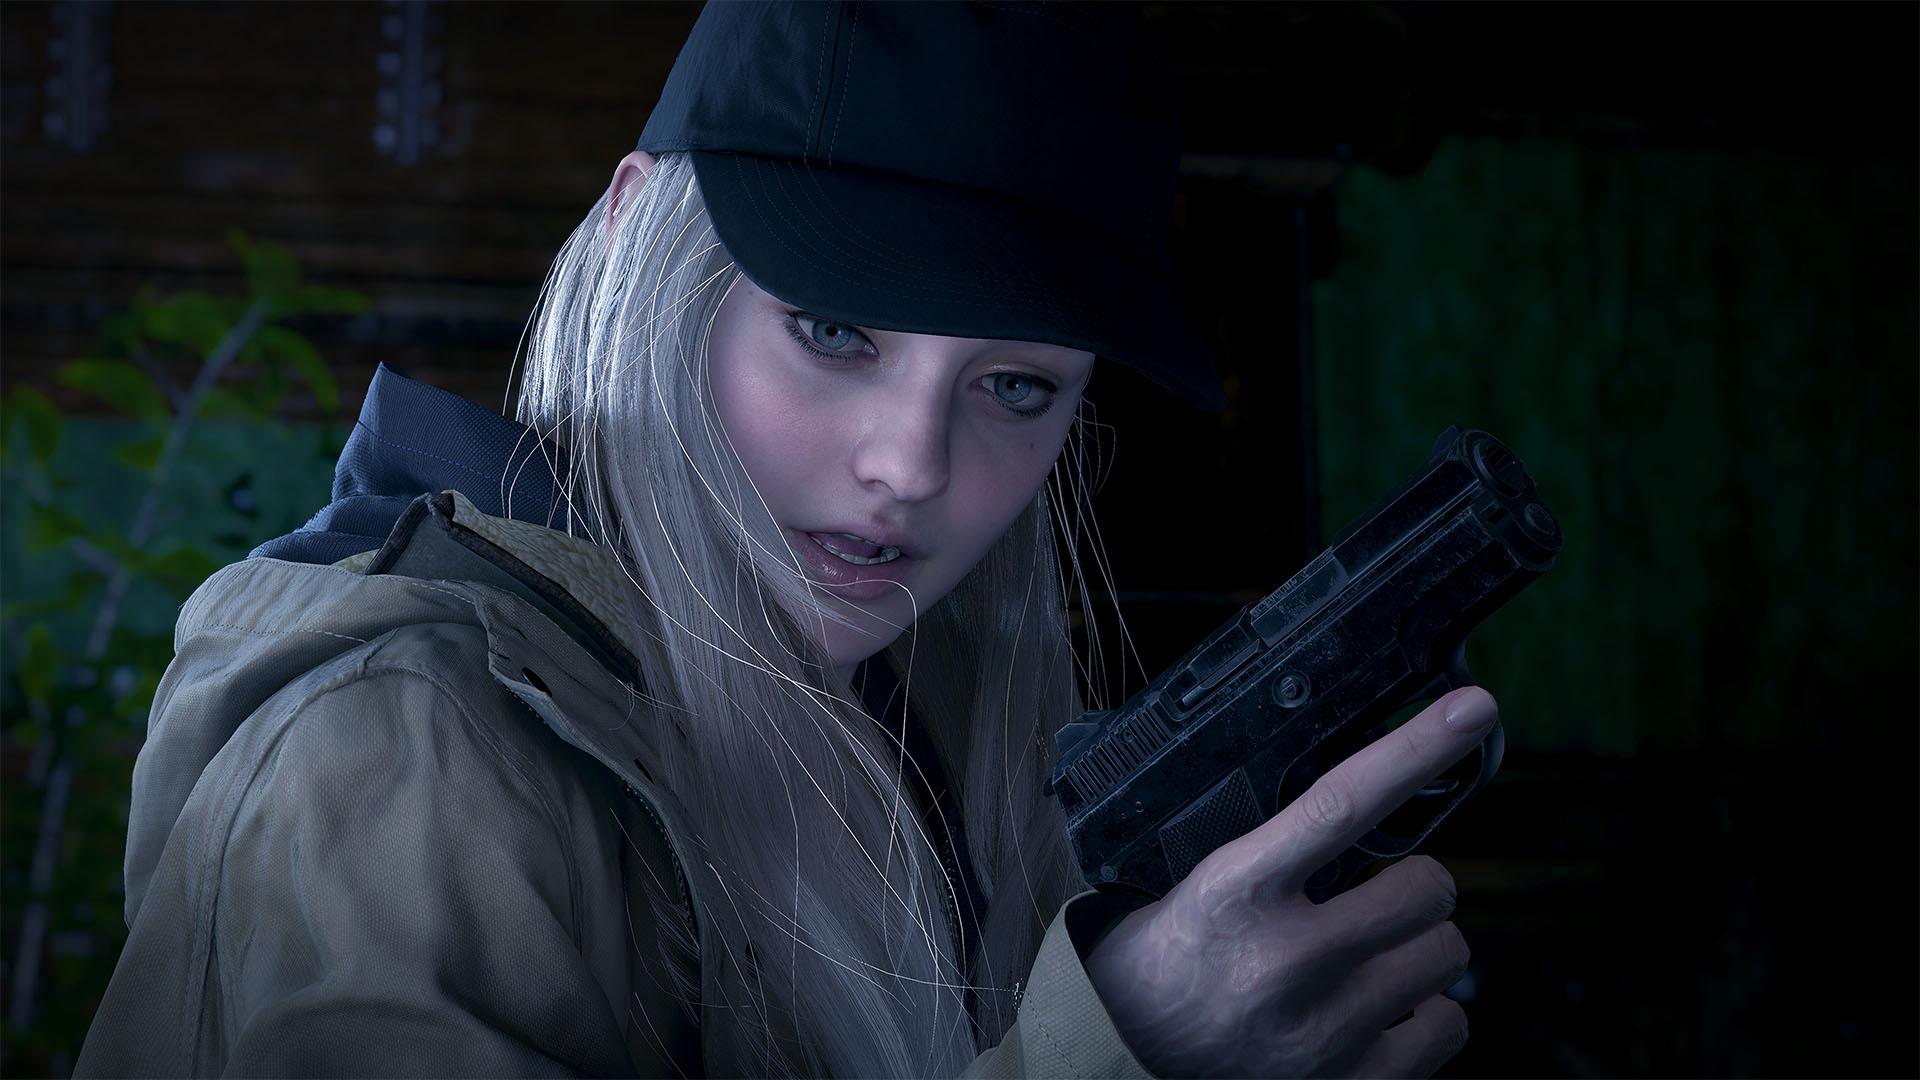 Resident Evil Village Shadows of Rose DLC screenshot showing Rose looking at a gun